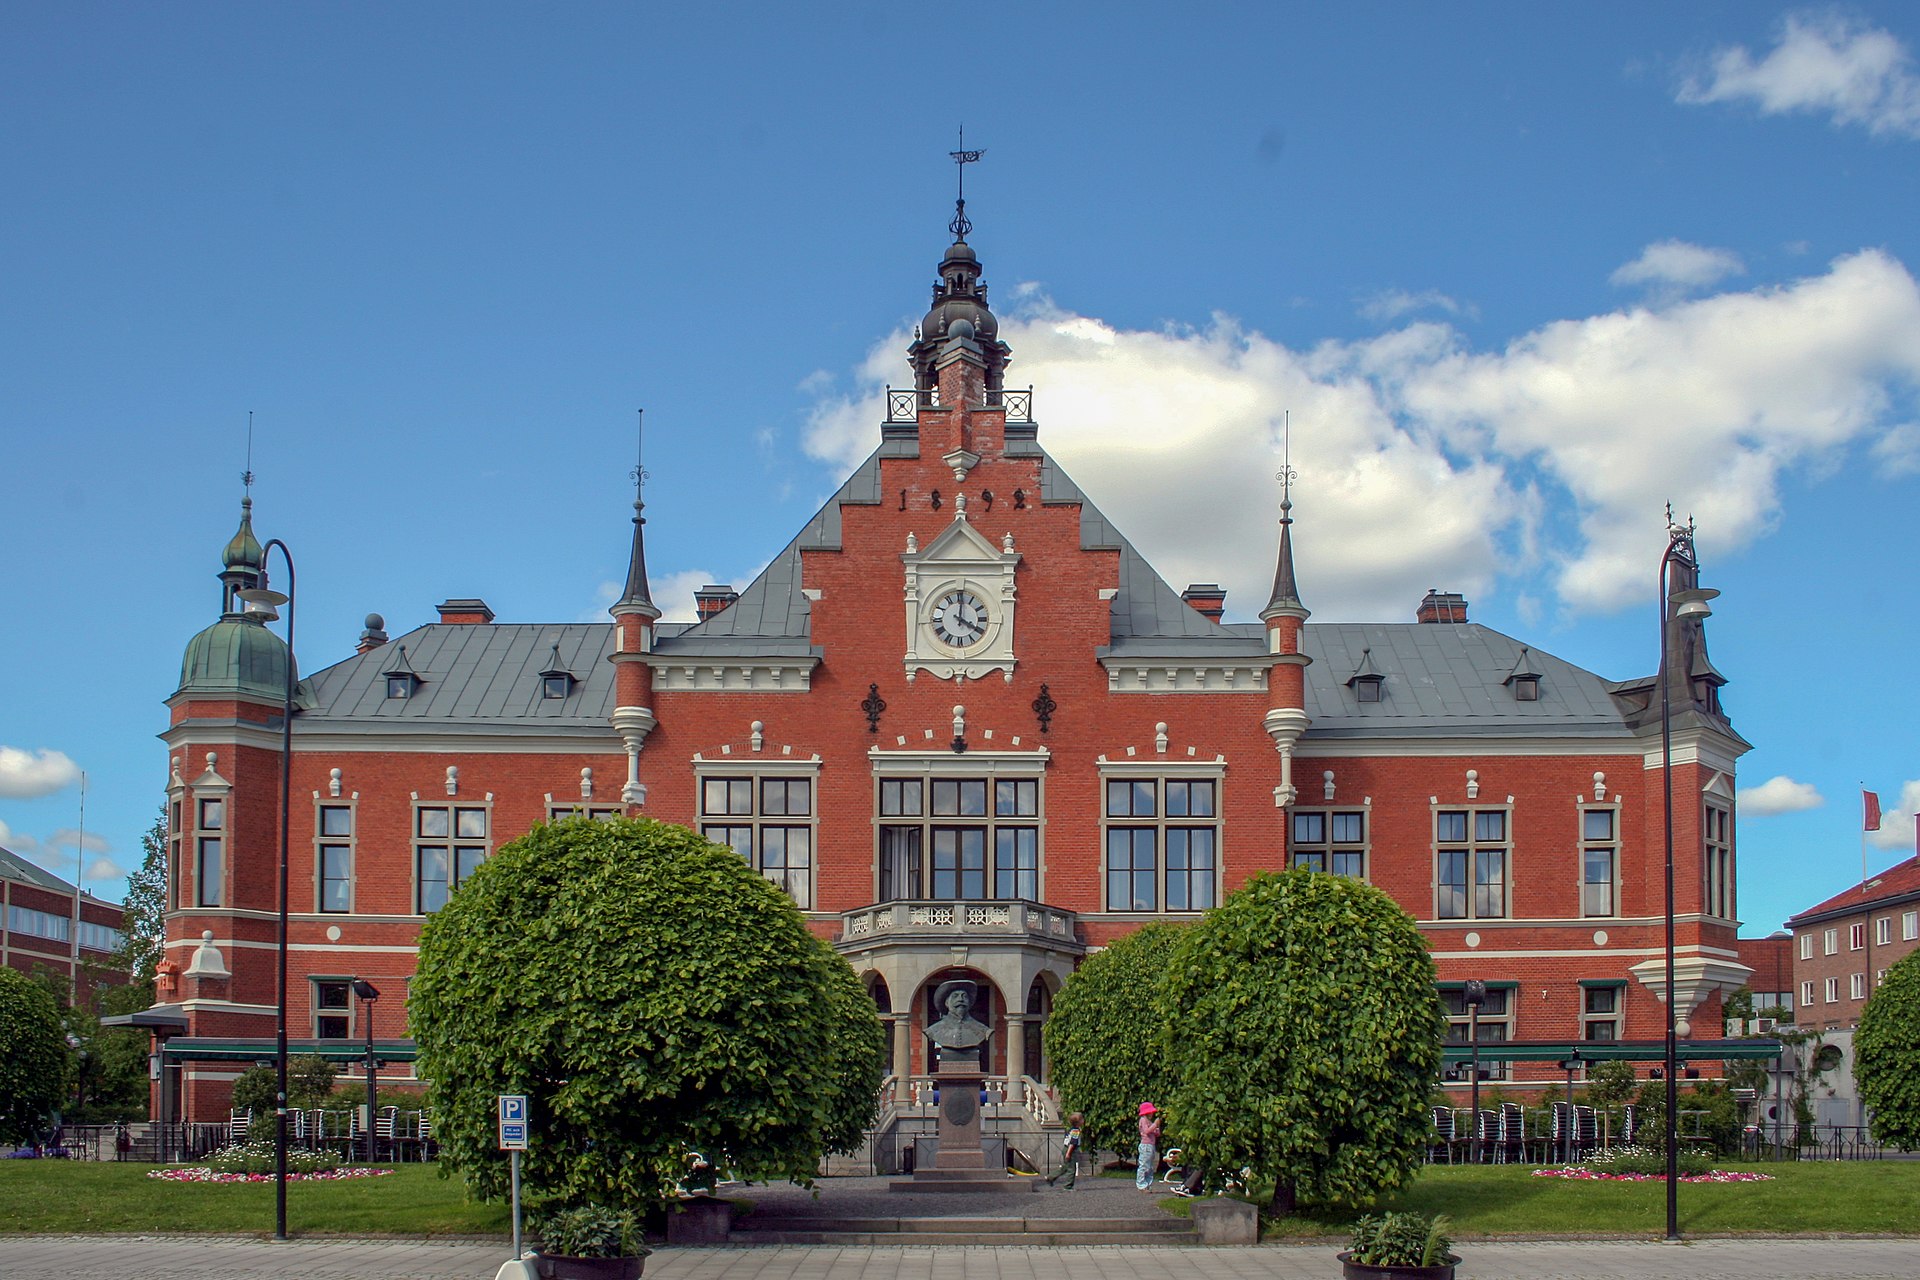  Är rådhuset i Umeå Sveriges vackraste byggnad genom tiderna?